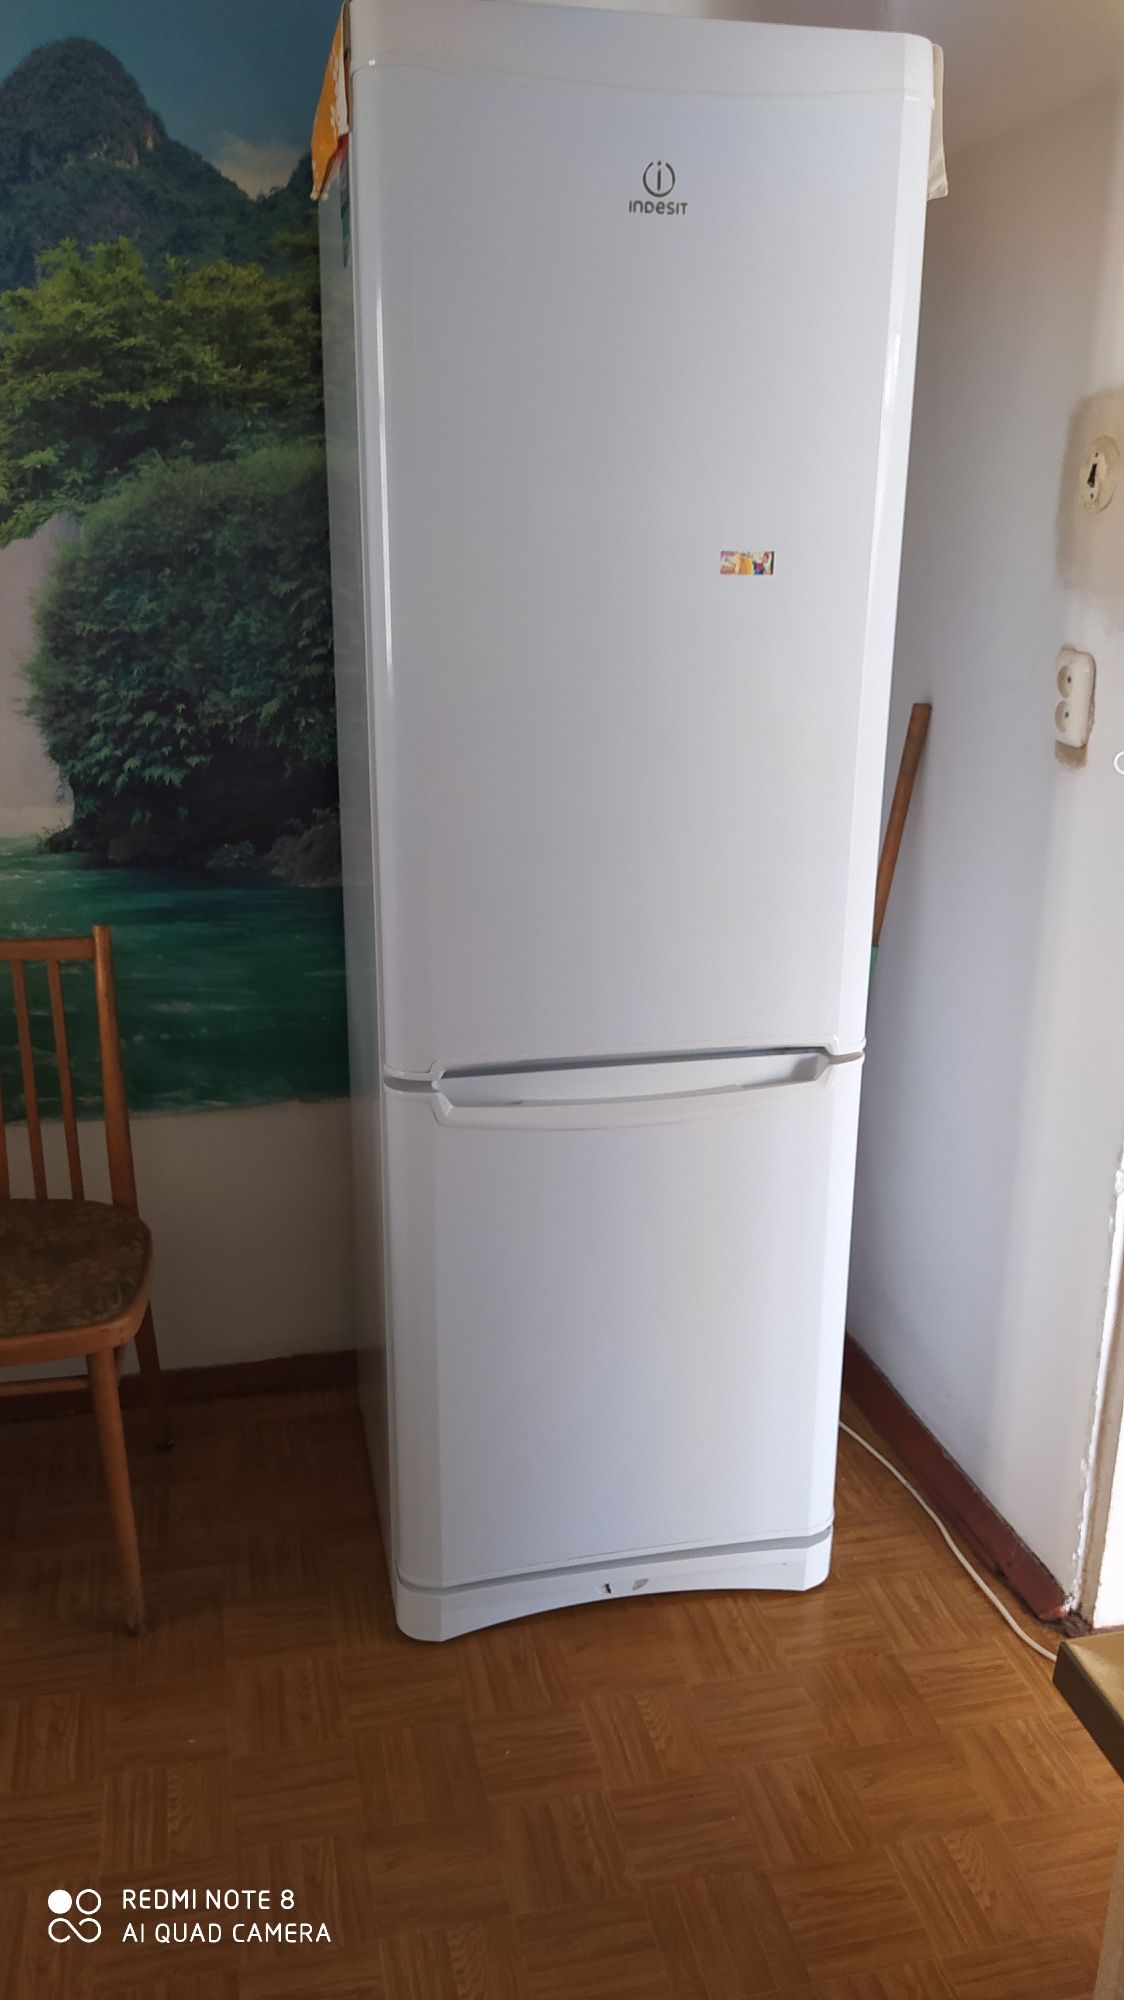 Продам холодильник Indezit в рабочем хорошем состоянии,